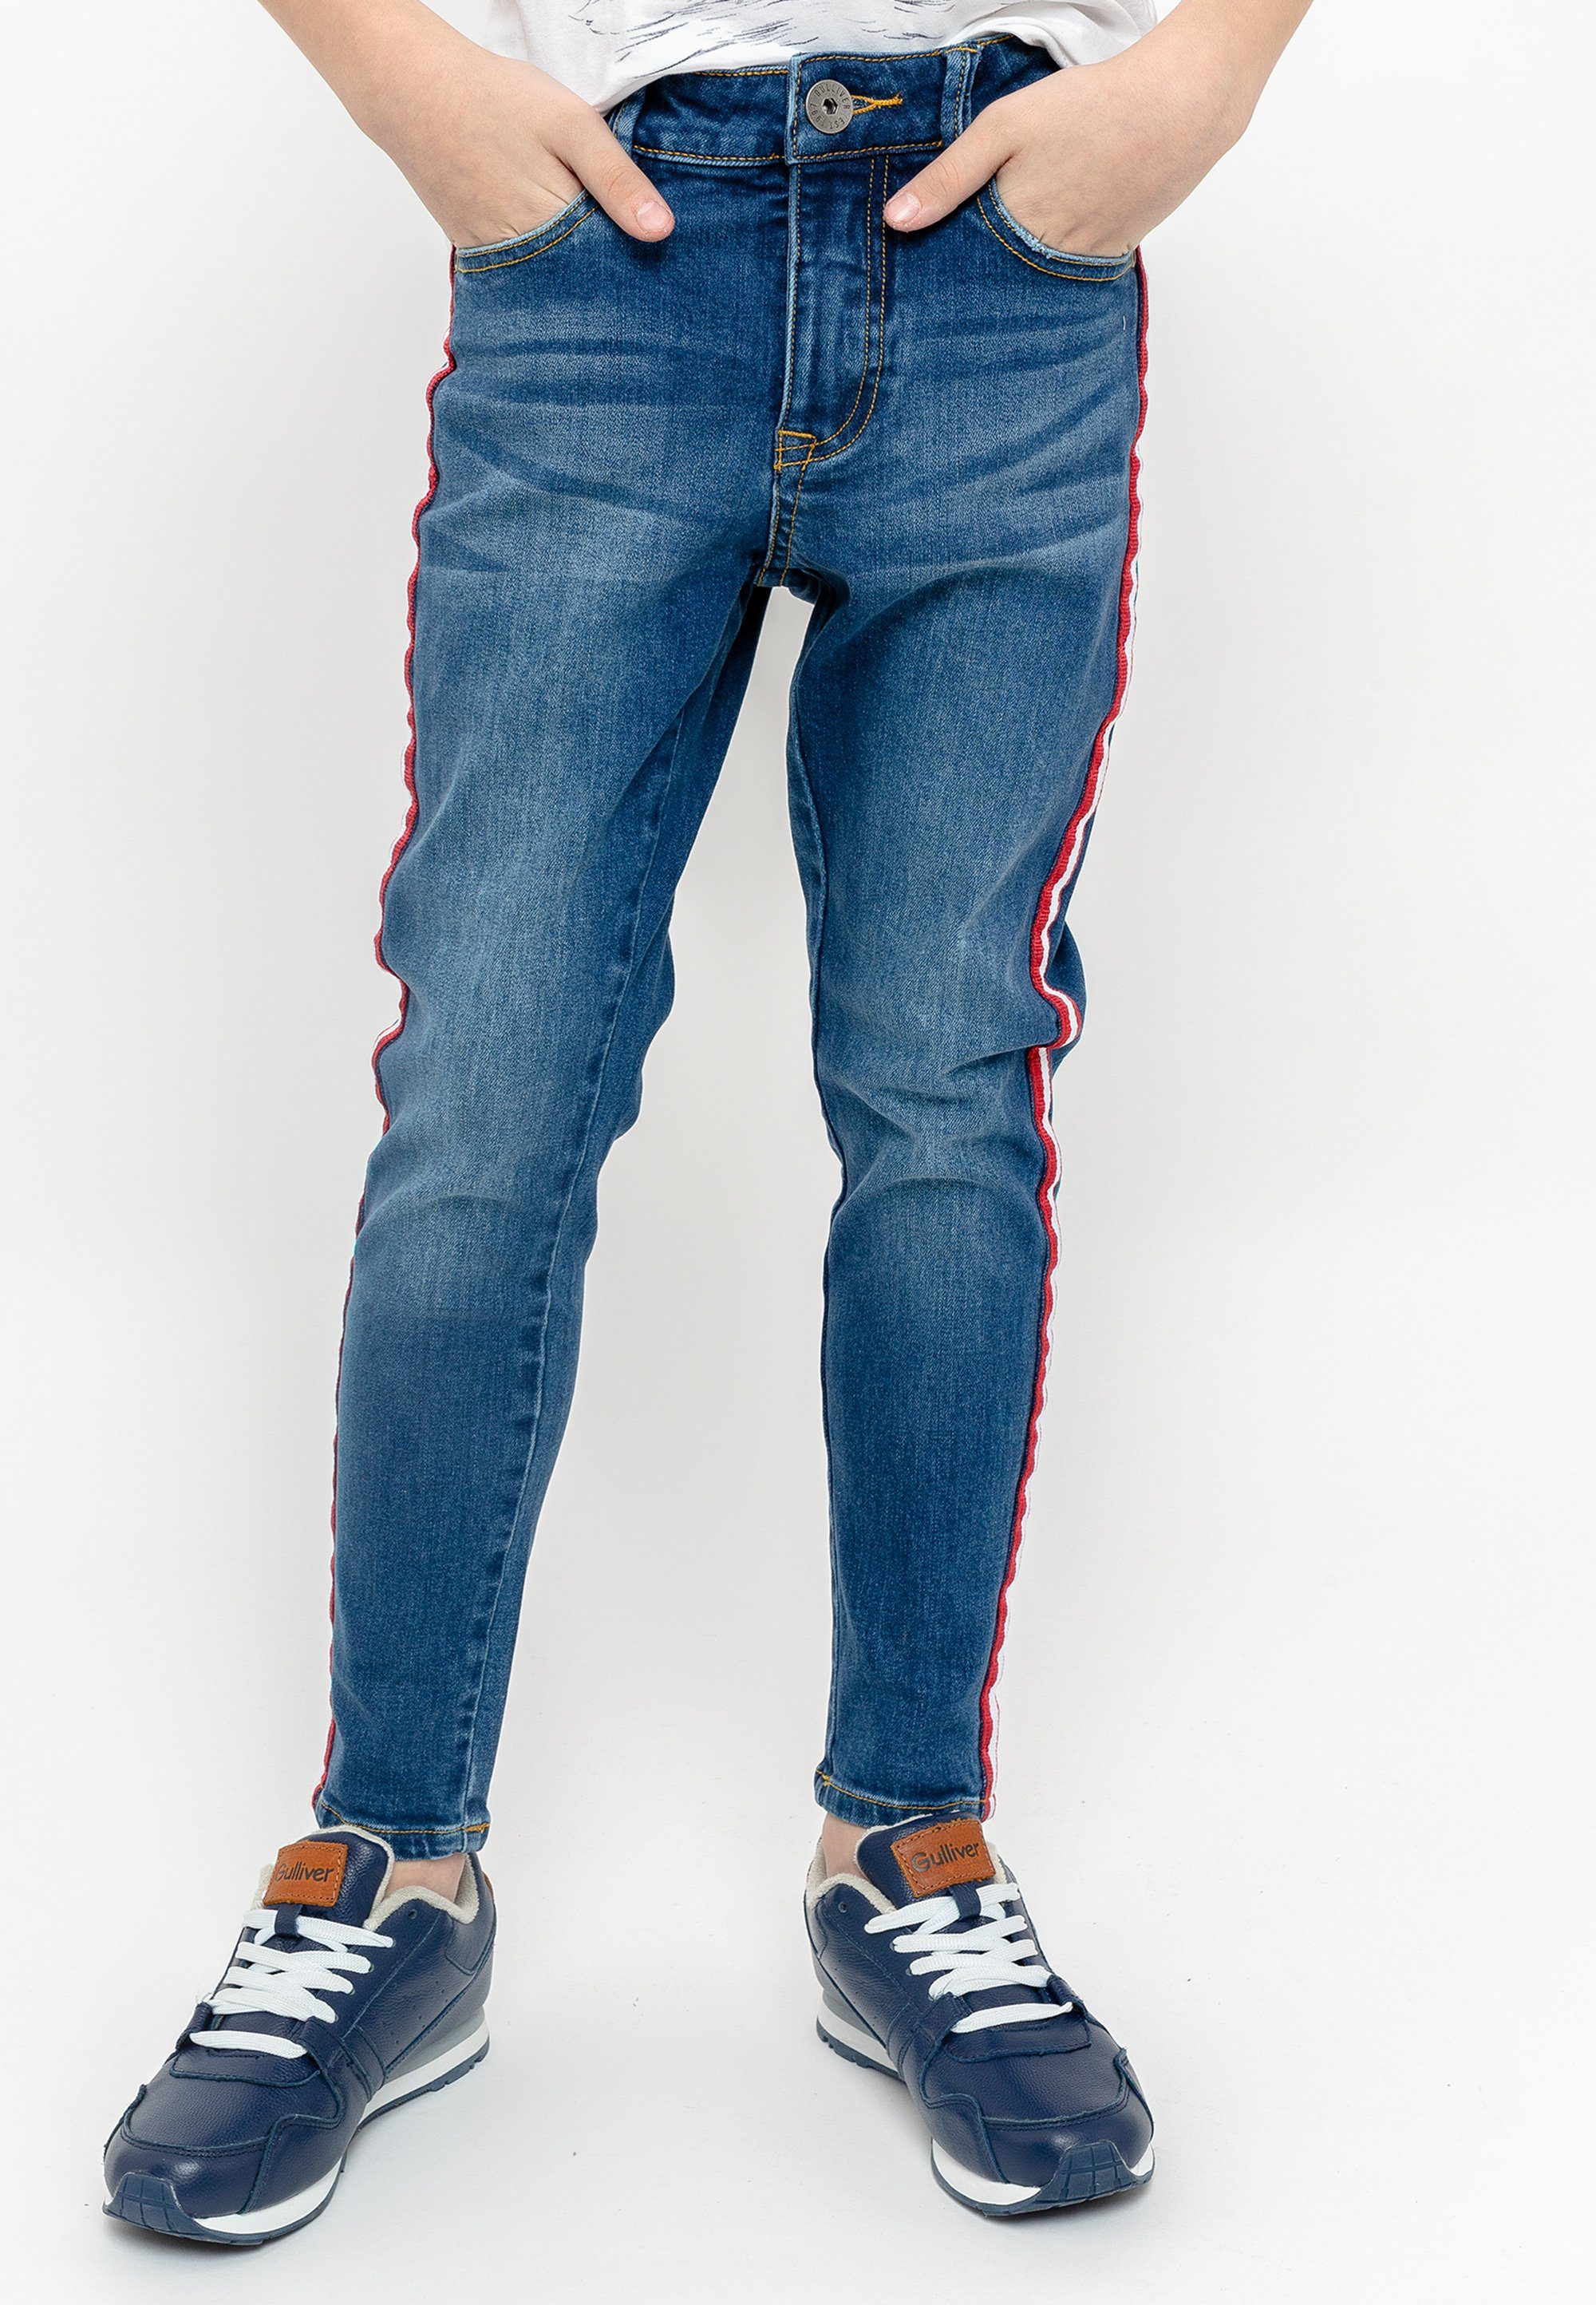 Gulliver Bequeme Jeans Casual Denim Hose mit kontrast Seitenstreifen | Jeans